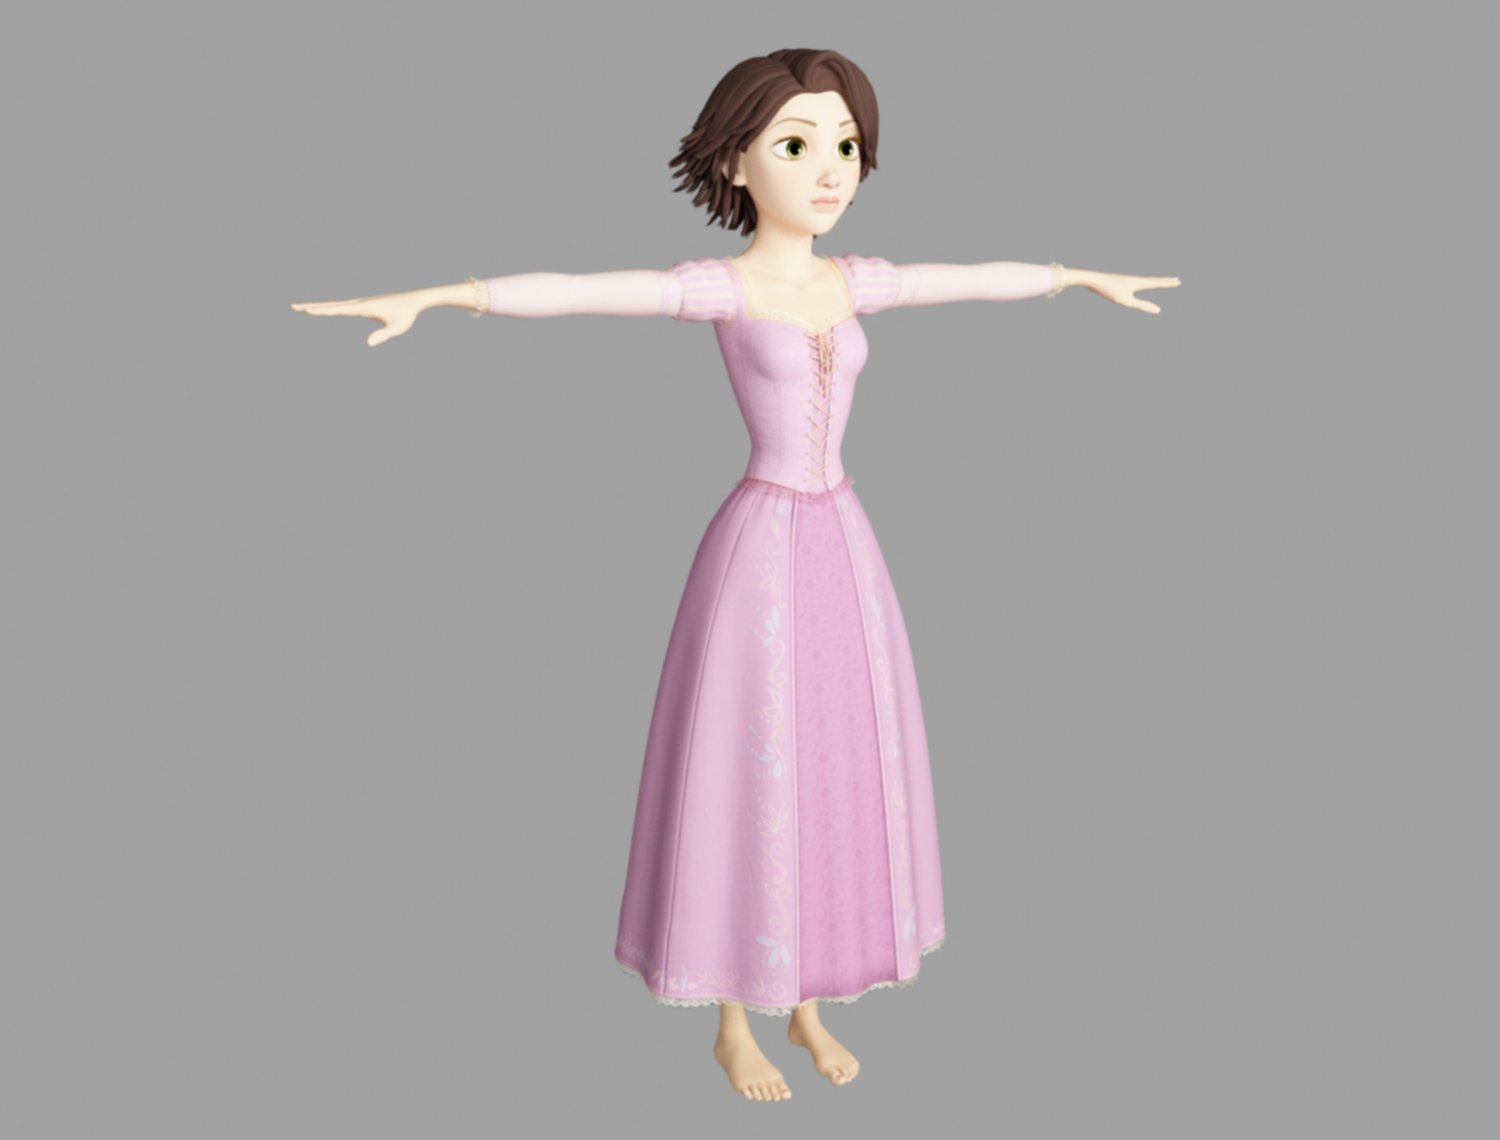 rapunzel short hair 3D Model in Cartoon 3DExport